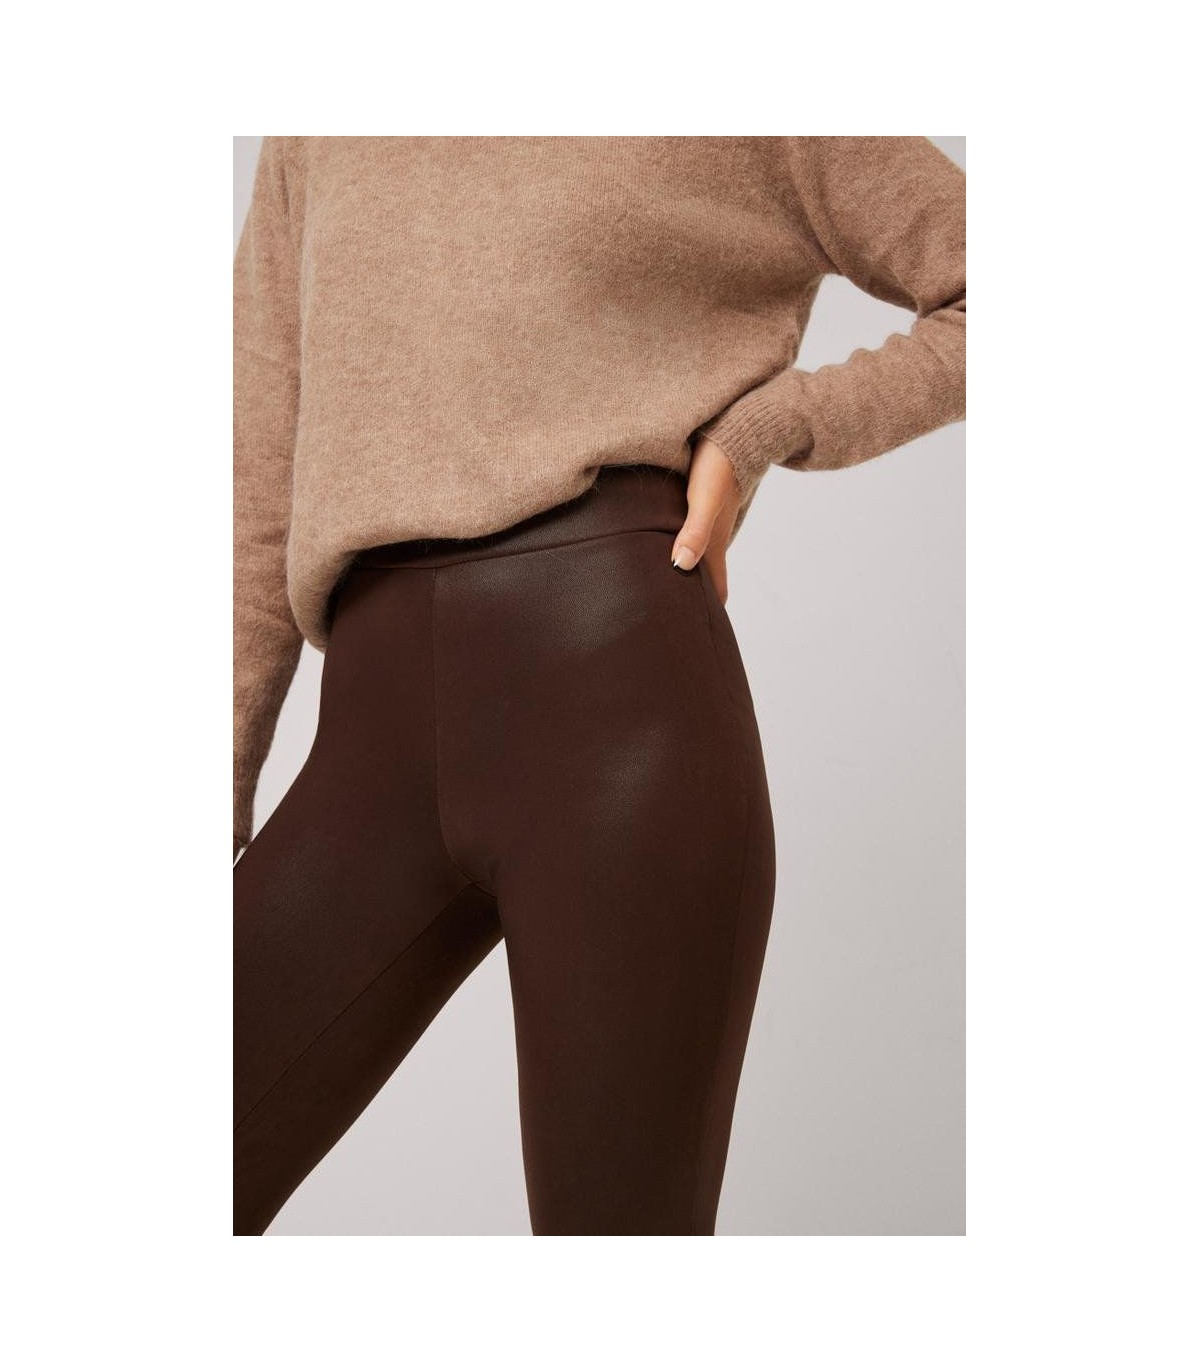 https://merceriainma.com/11299-superlarge_default/leggings-termico-mujer-marron-70293-ysabel-mora.jpg